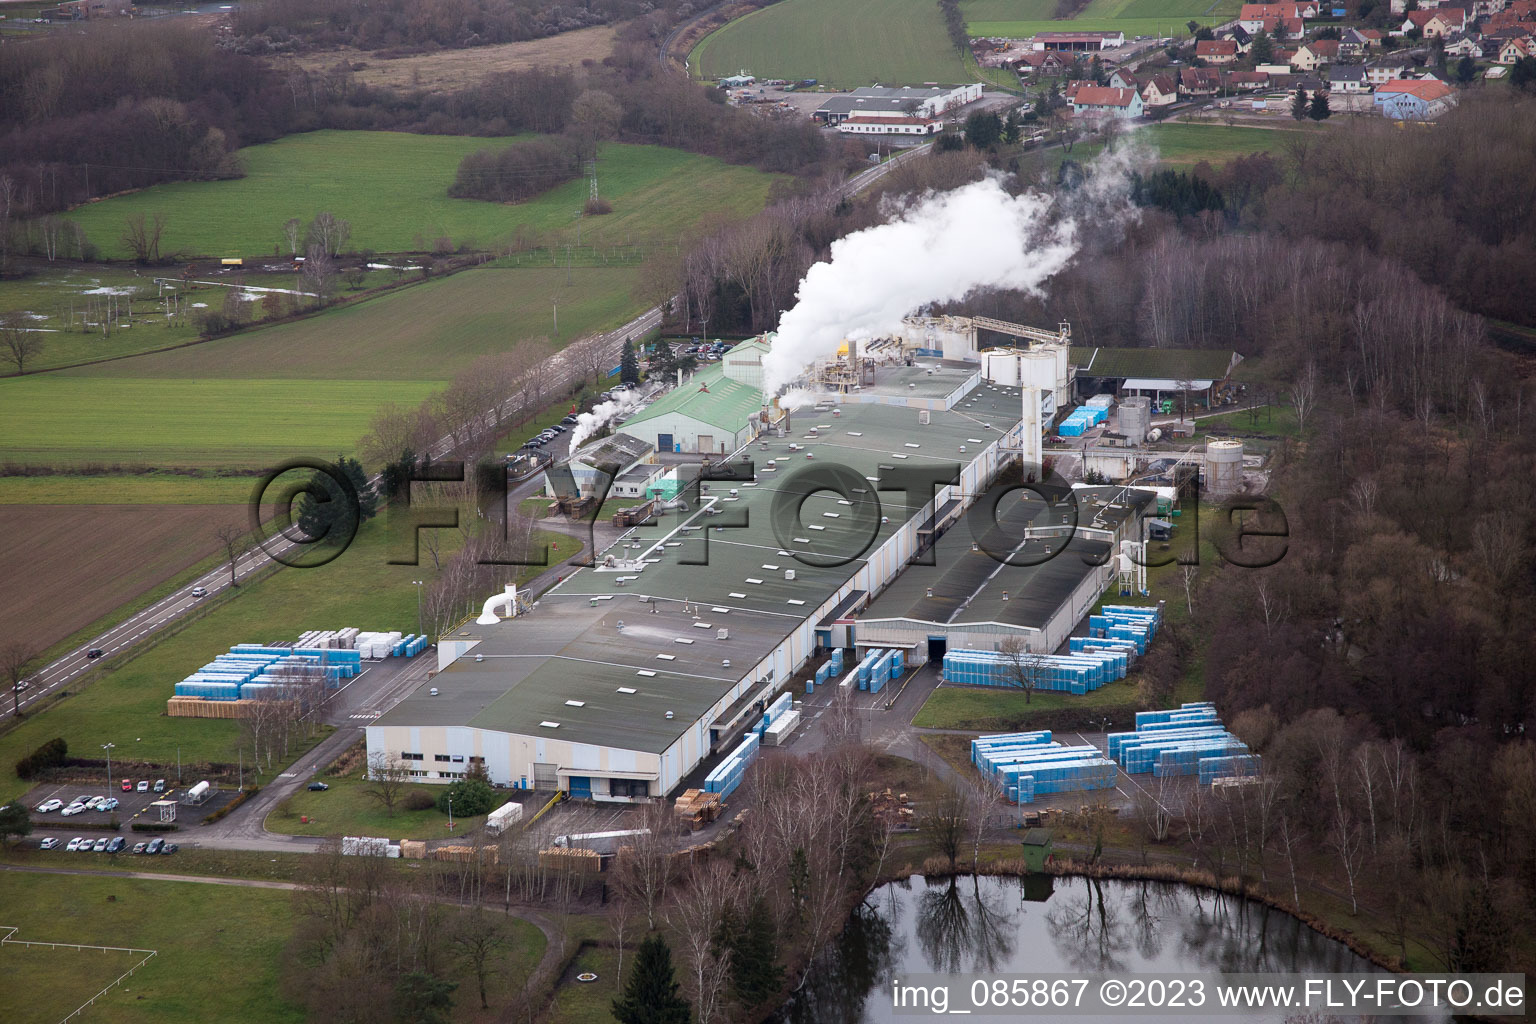 Zone industrielle O à Altenstadt dans le département Bas Rhin, France vue d'en haut